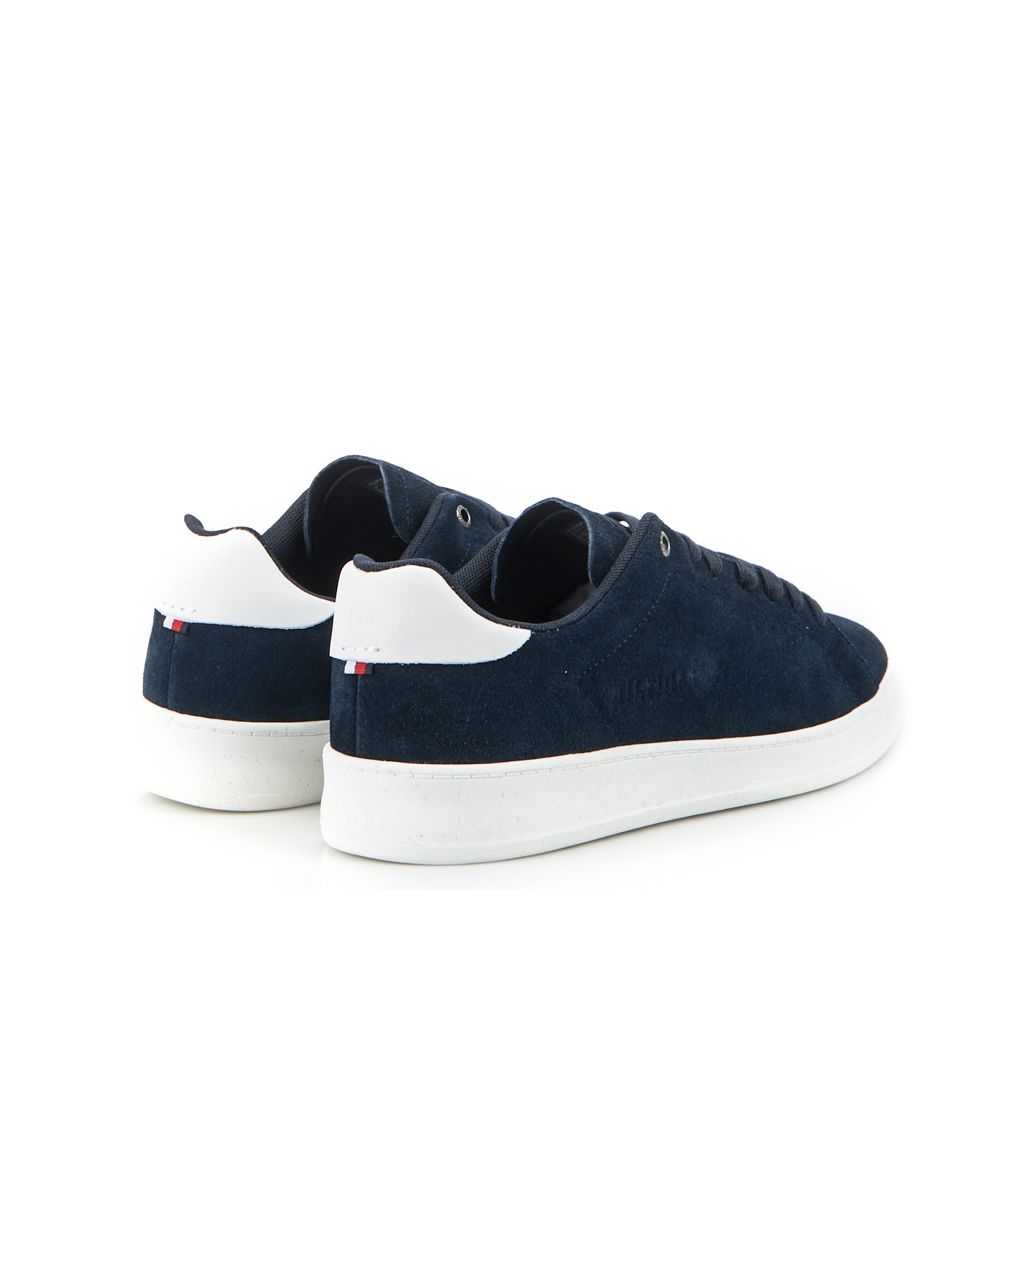 Tommy Hilfiger Menswear Sneakers Donker blauw 074132-001-40